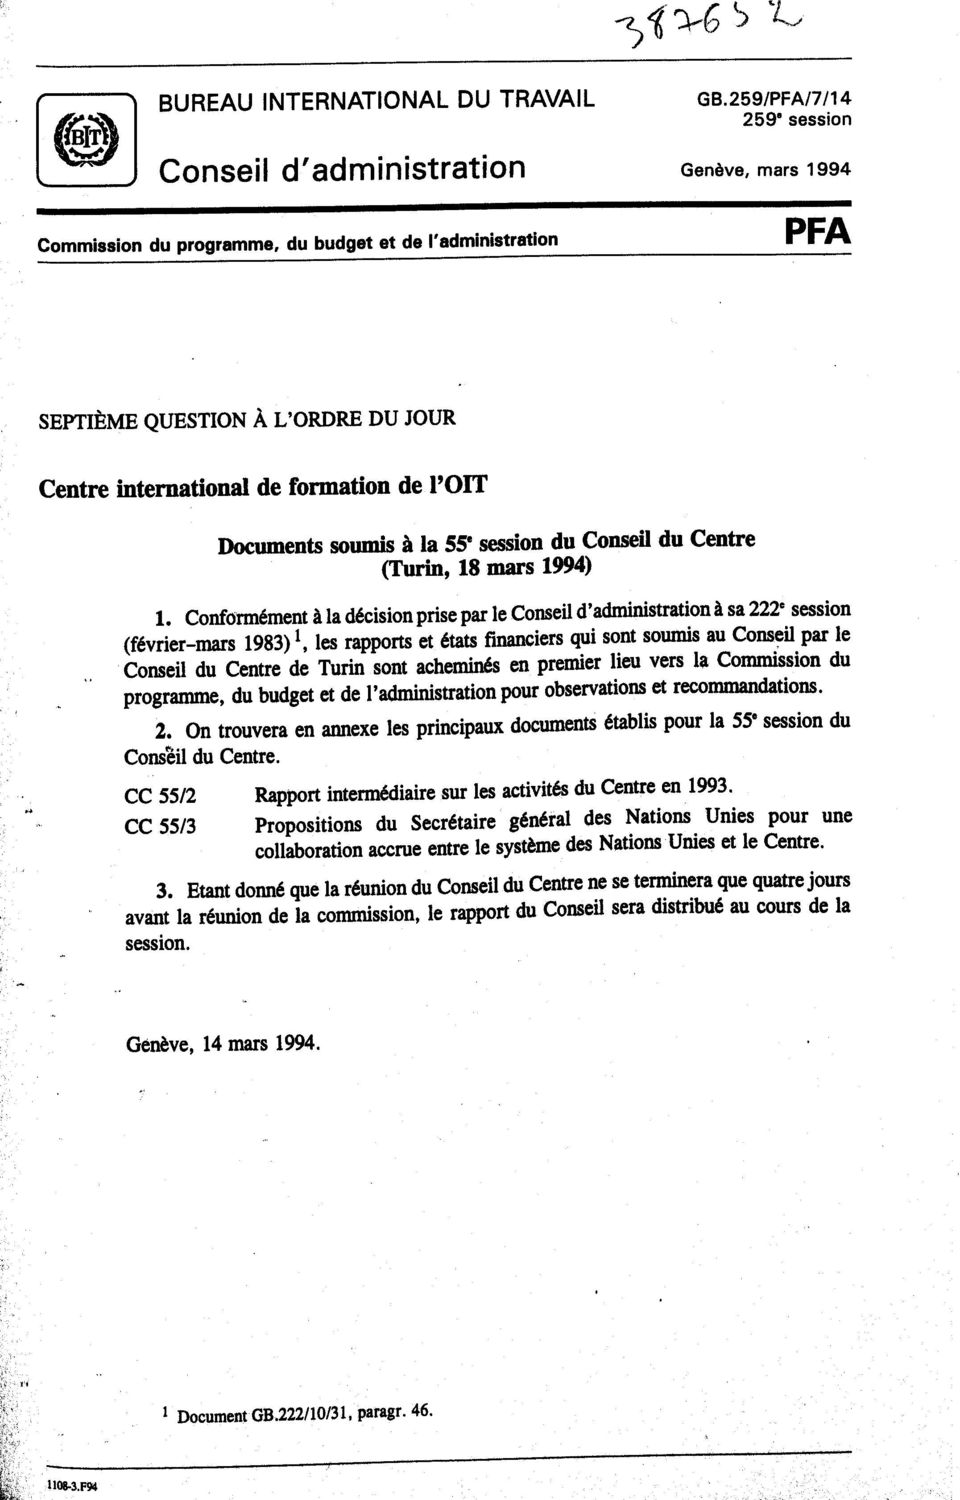 Conformément à la décision prise par le Conseil d'administration à sa 222" session (février-mars 1983) 1, les rapports et états financiers qui sont soumis au Conseil par le Conseil du Centre de Turin